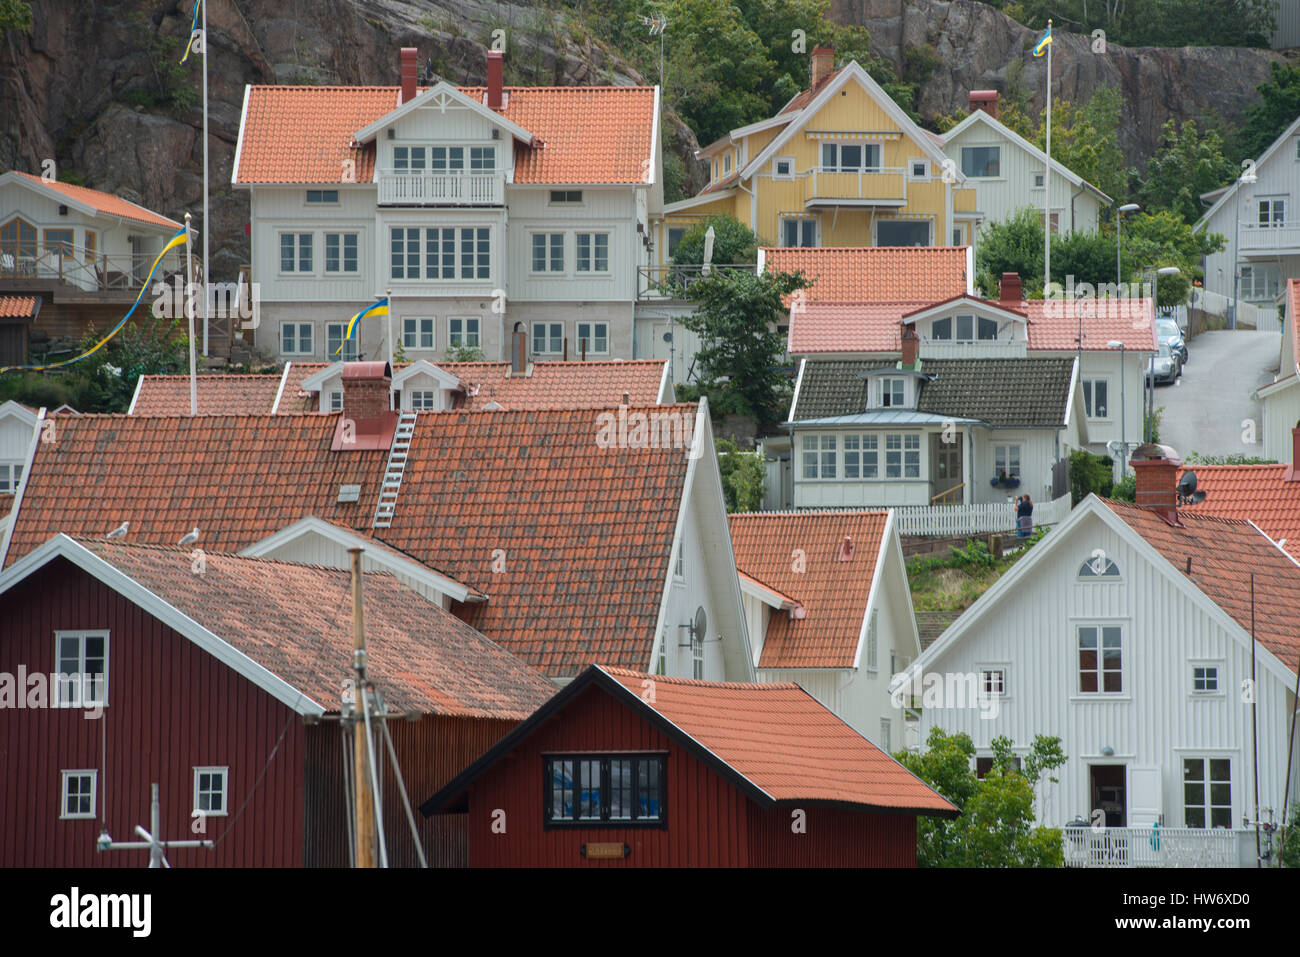 Grebbestad est un vieux village de pêche traditionel- avec des maisons en bois et une harbouir Banque D'Images